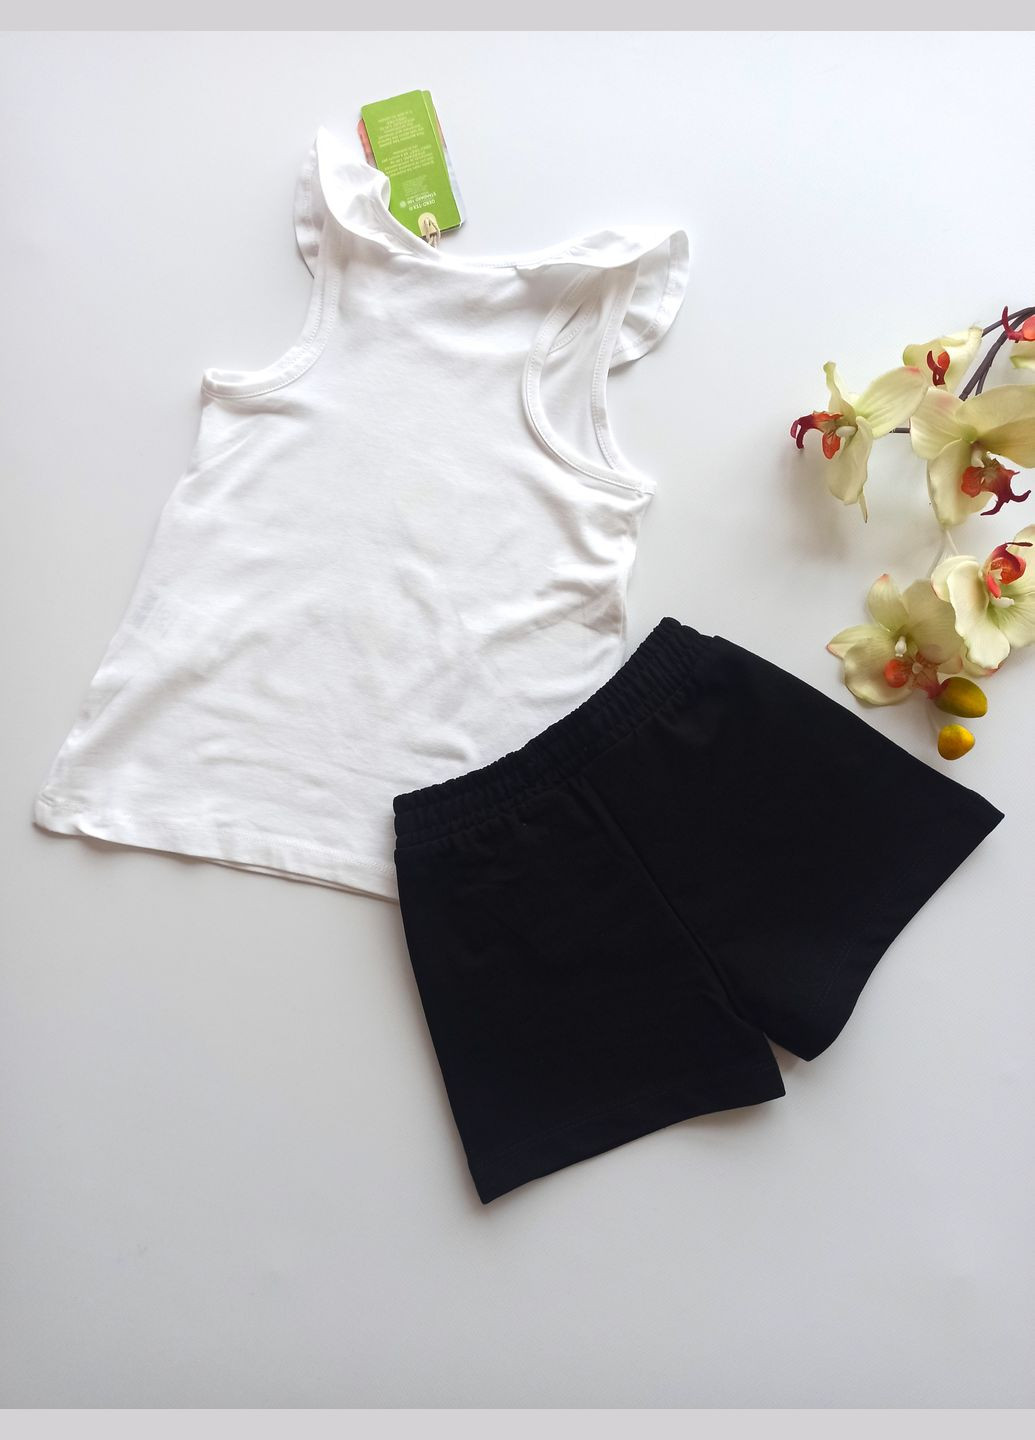 Черно-белый летний комплект костюм для девочки белая футболка с олафом + шорты черные 1000-3/1000-4 (110 см) OVS